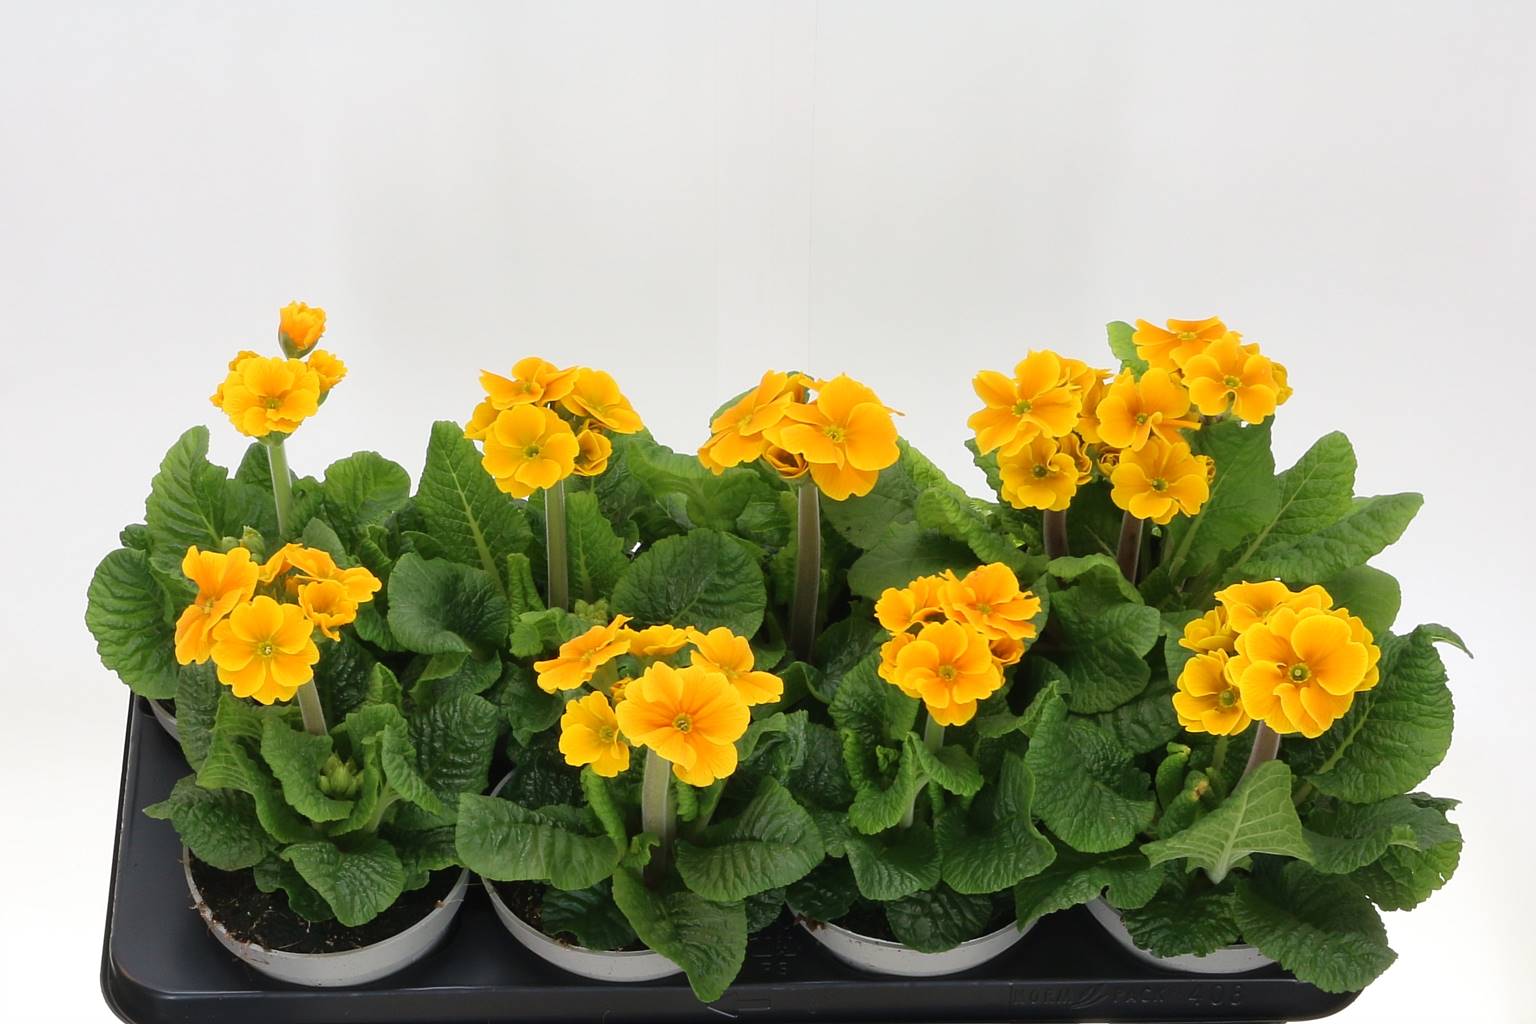 Водолазы Примулы в восторге ( Primula Divers Elatior ) W 13 см H 22 см